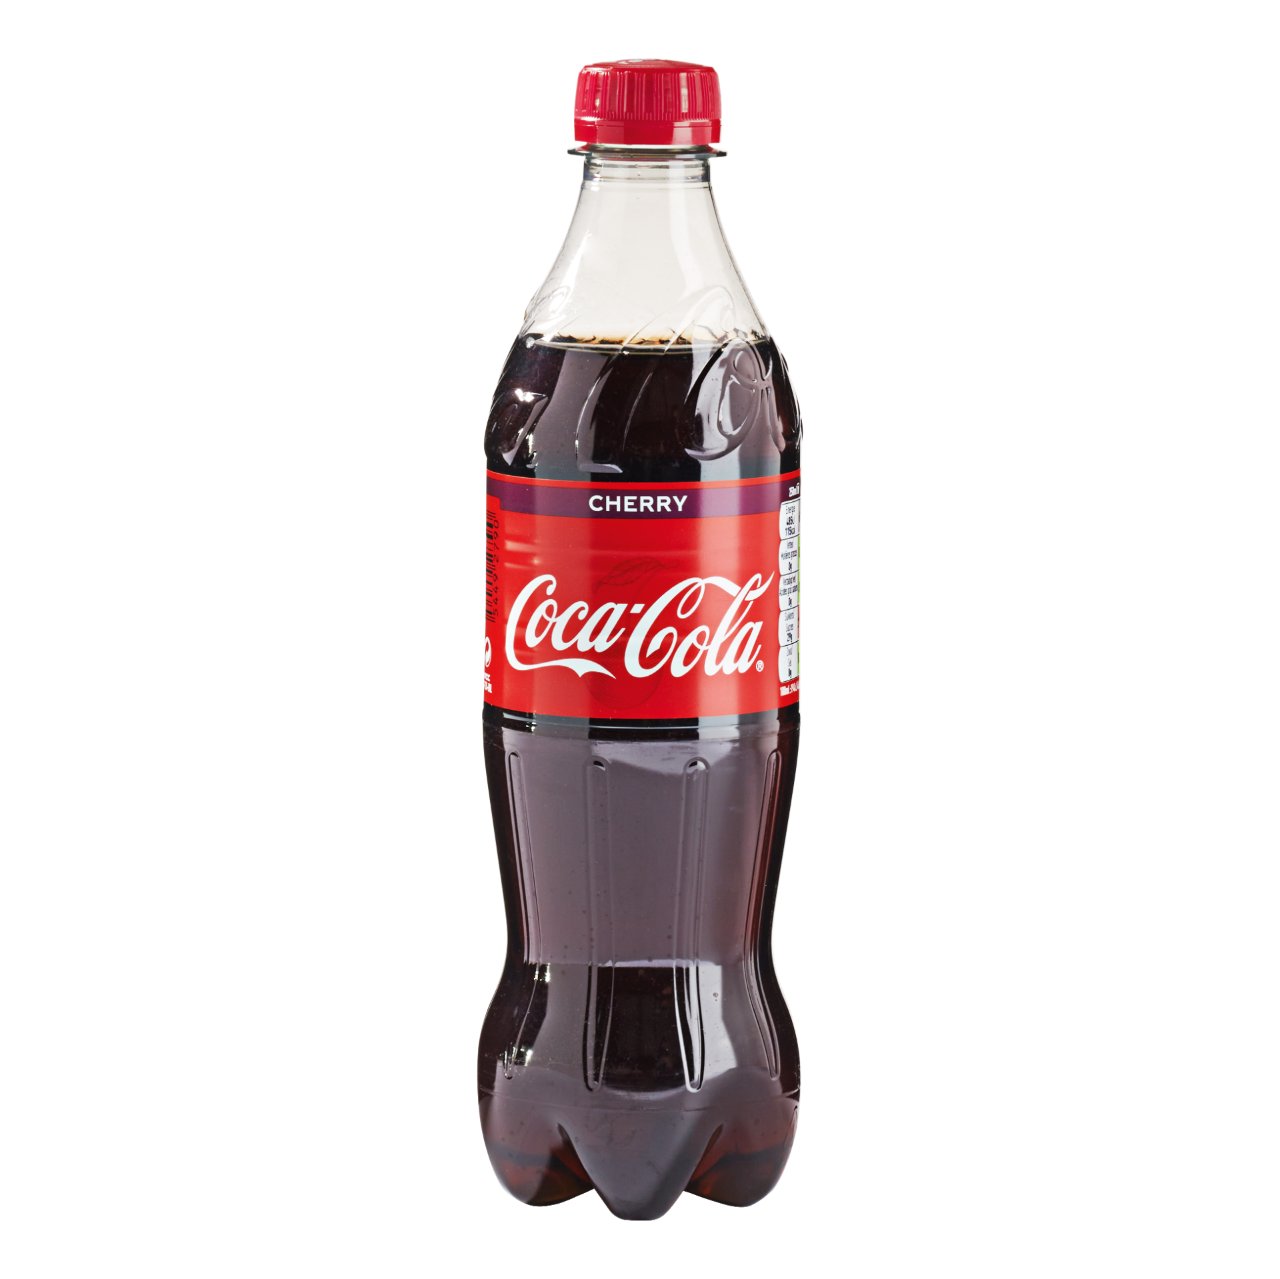 waar is de coca cola in de aanbieding se